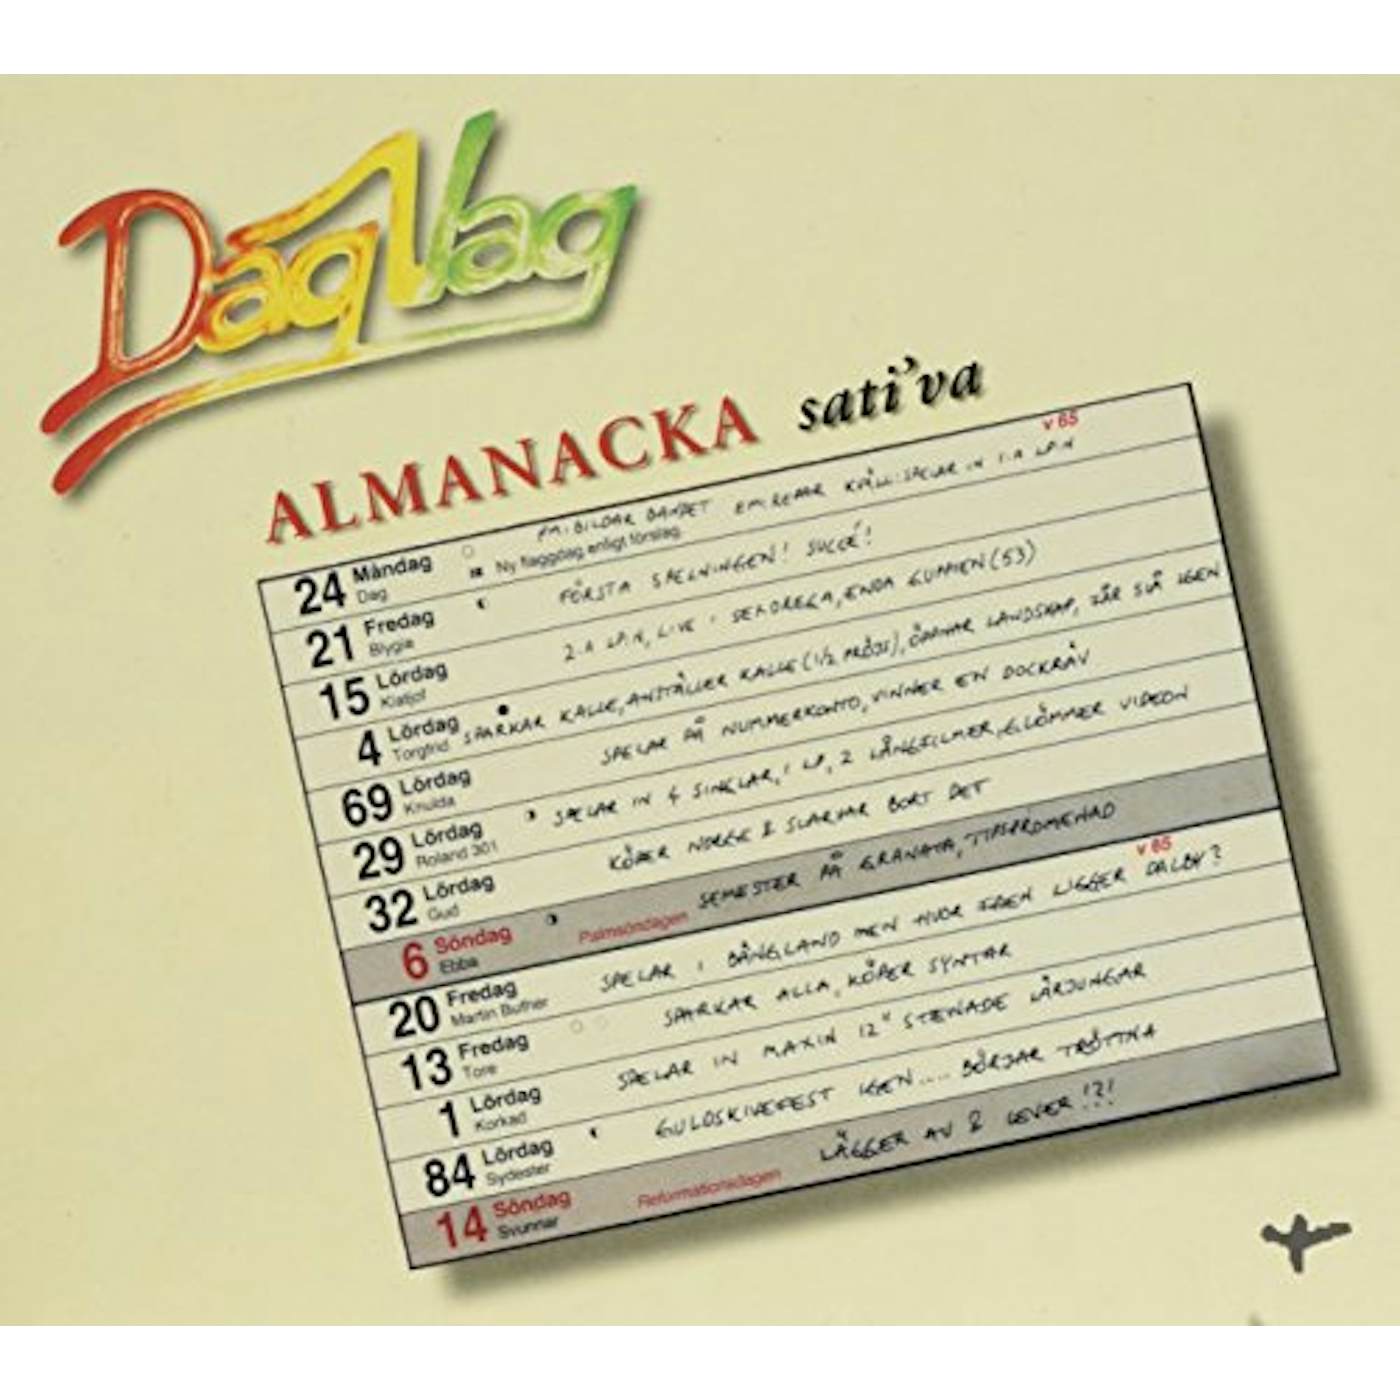 Dag Vag ALMANACKA CD